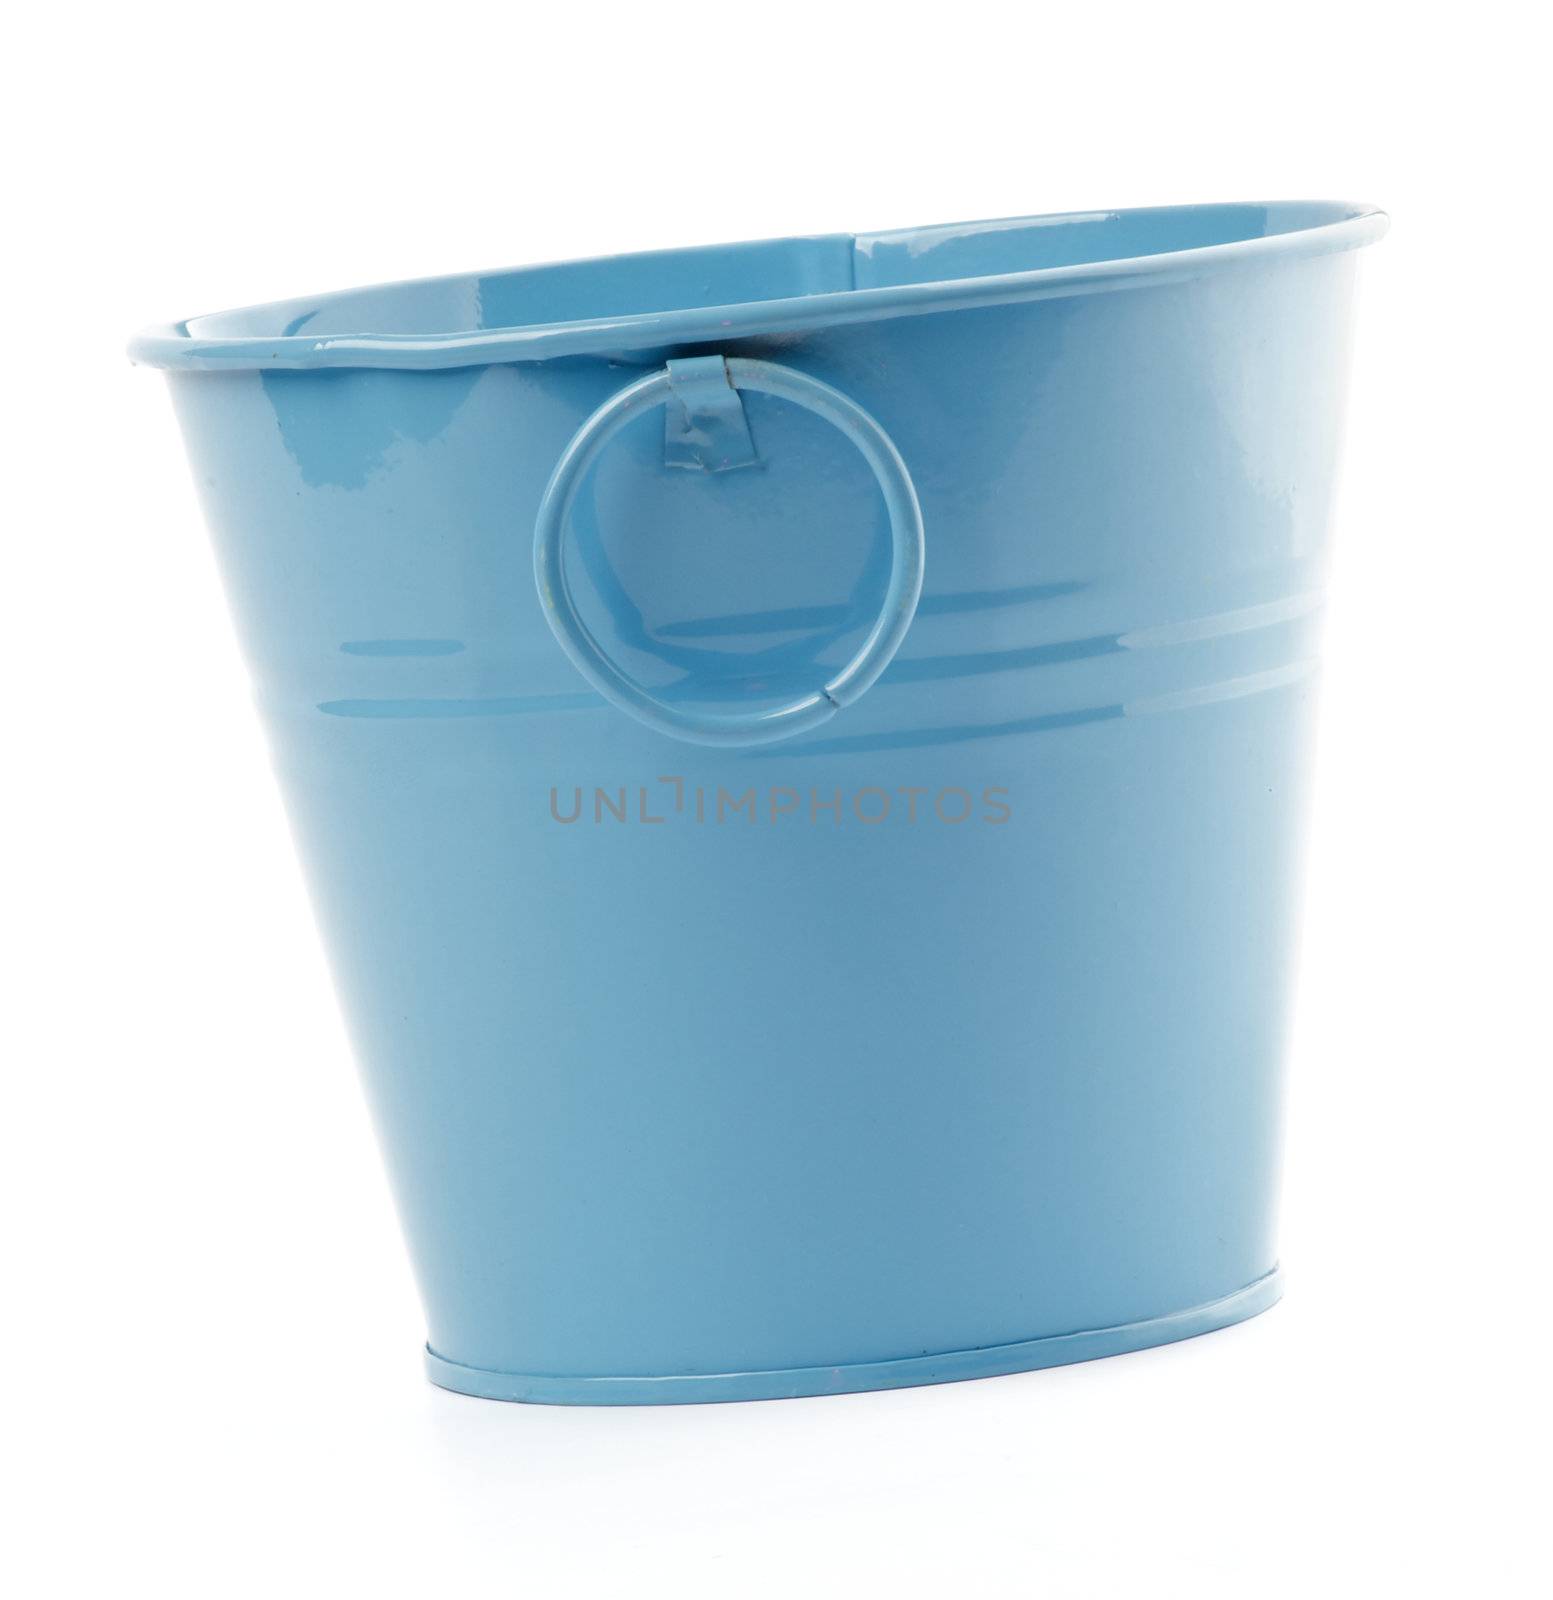 Blue Bucket by zhekos